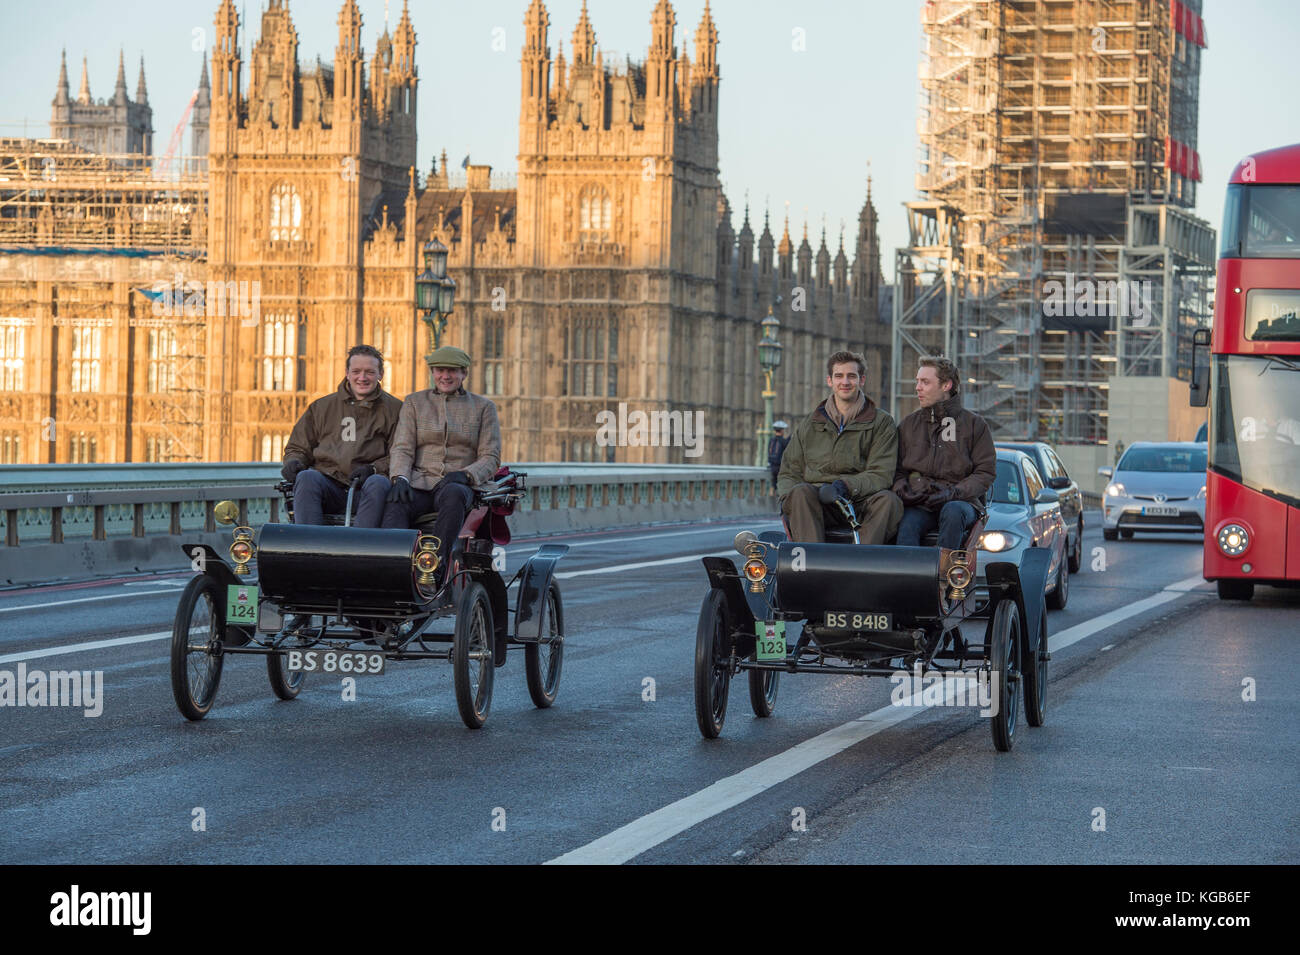 5 novembre 2017. Bonhams de Londres à Brighton, la course automobile de vétéran, la plus longue course automobile au monde, 1902 Oldsmobile traversent le pont de Westminster. Banque D'Images